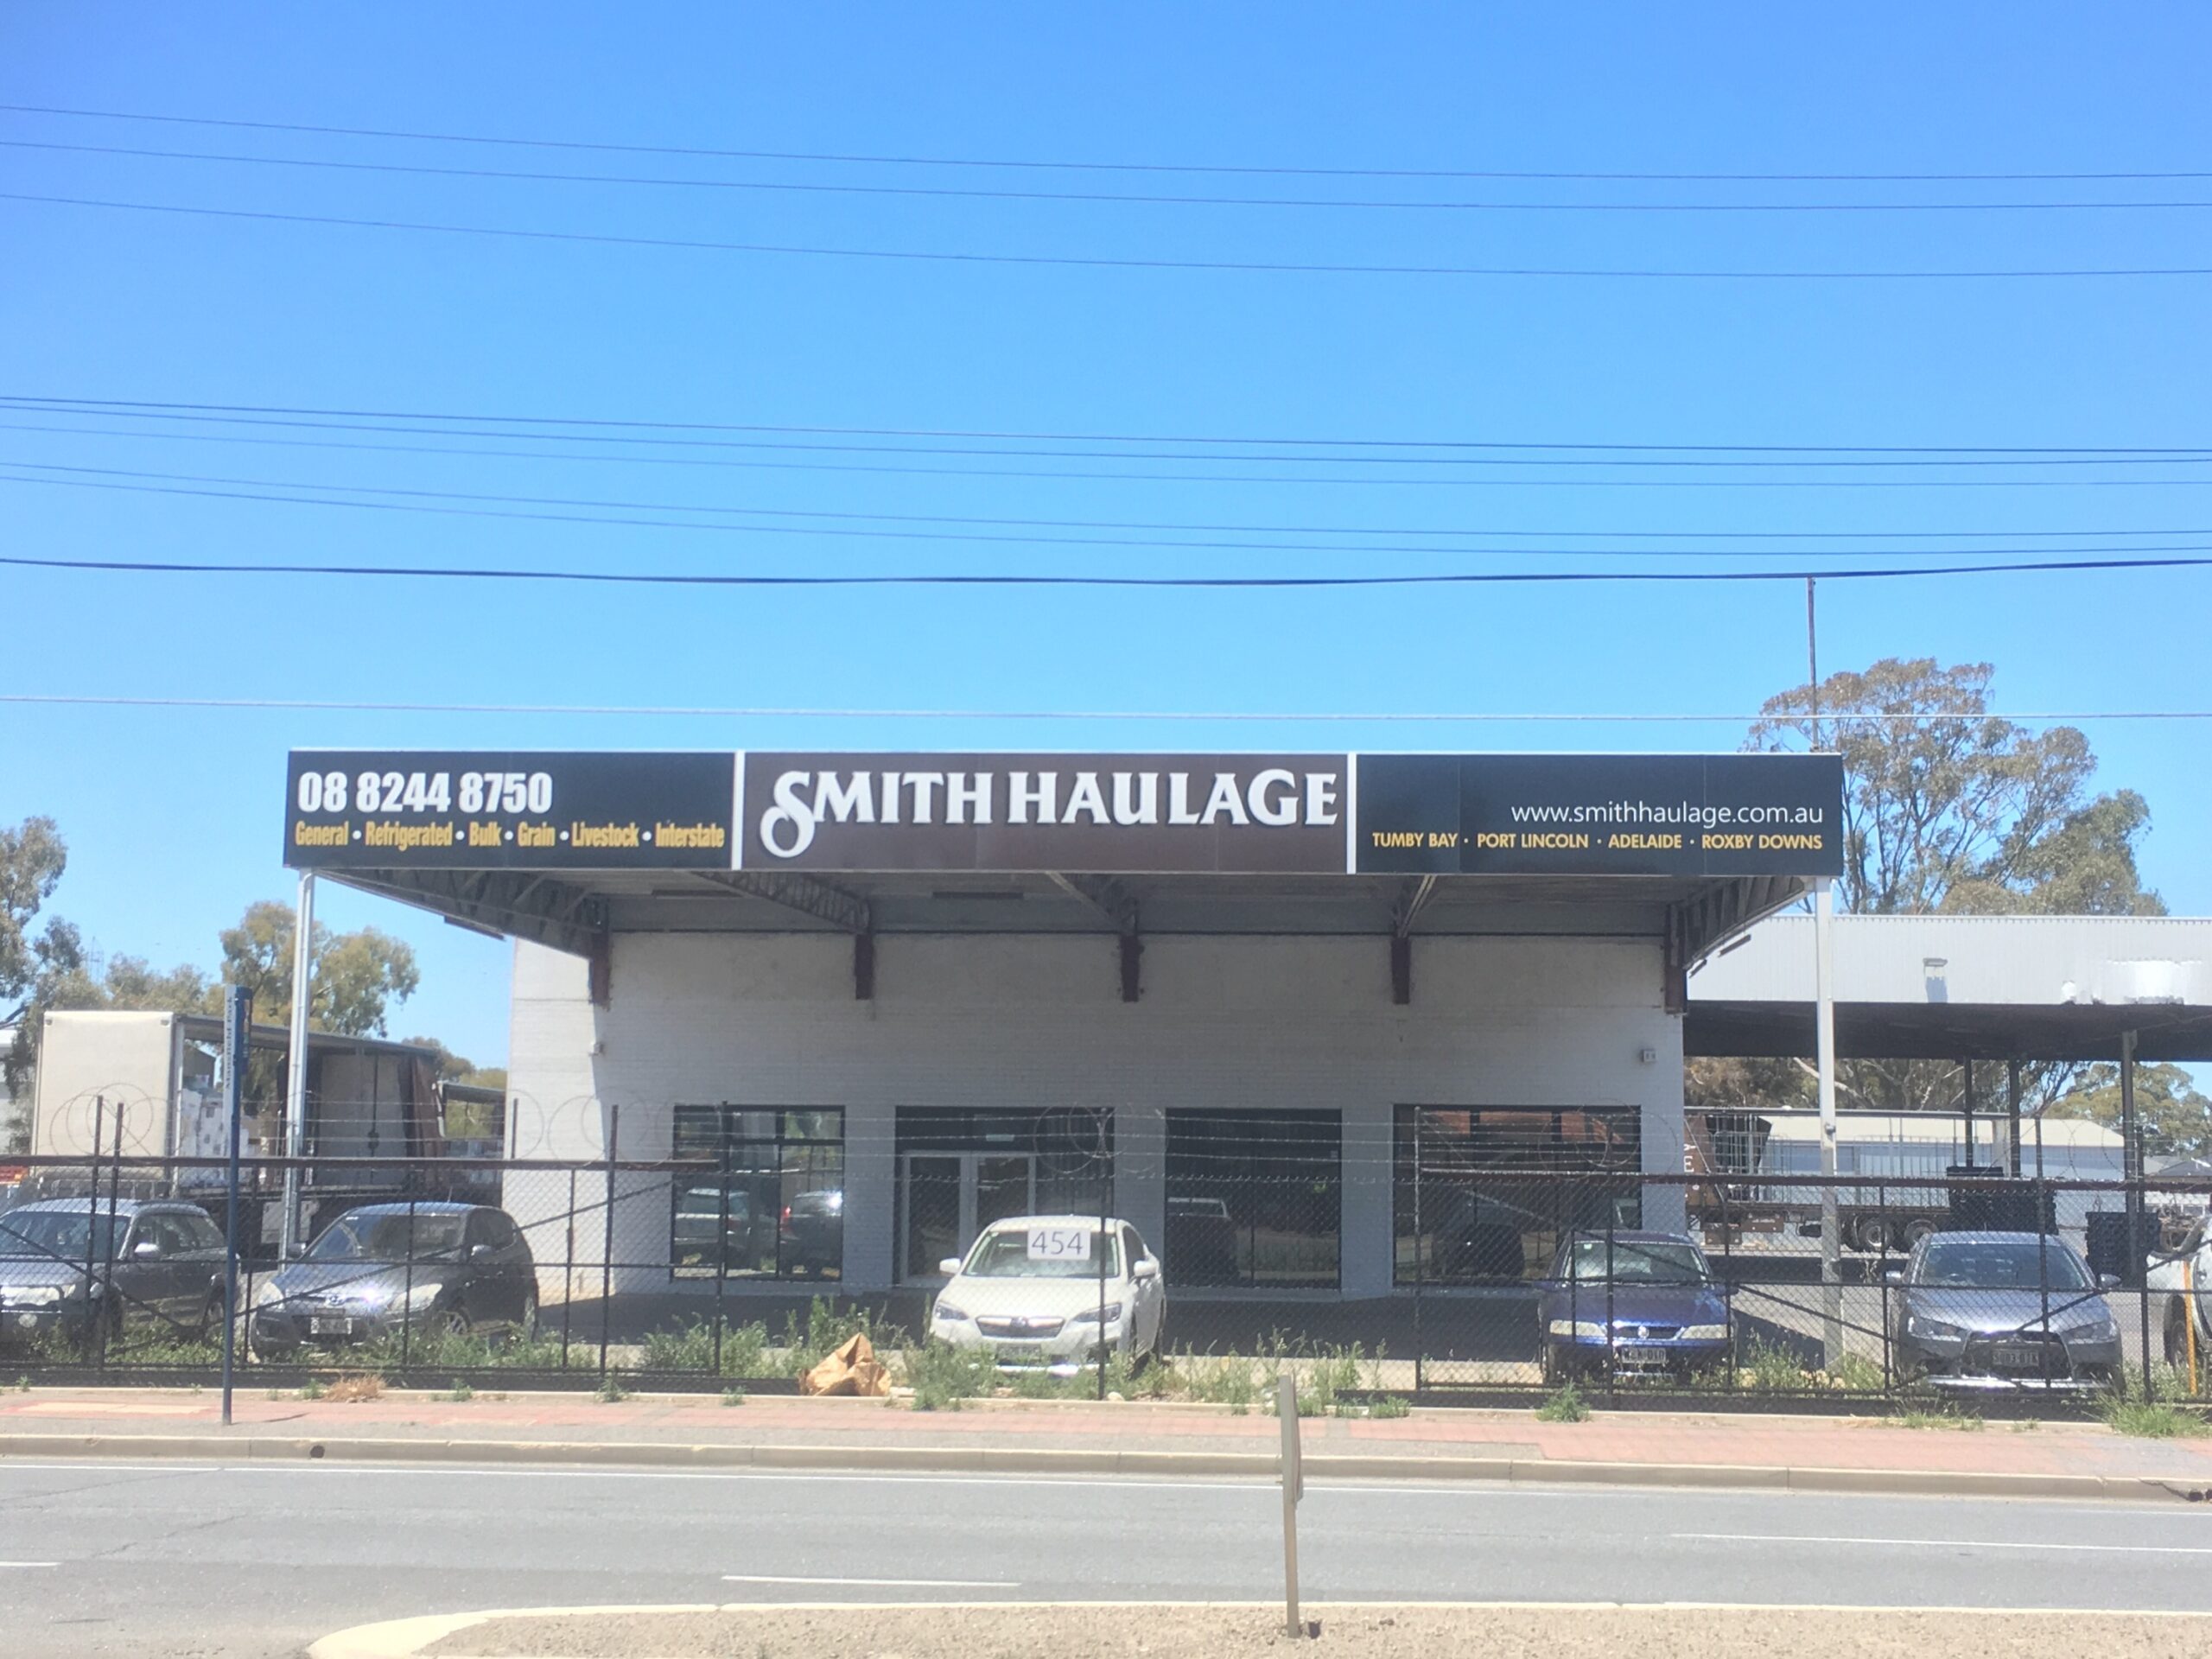 https://www.smithhaulage.com.au/wp-content/uploads/2019/02/Adelaide-DEpot-scaled.jpg